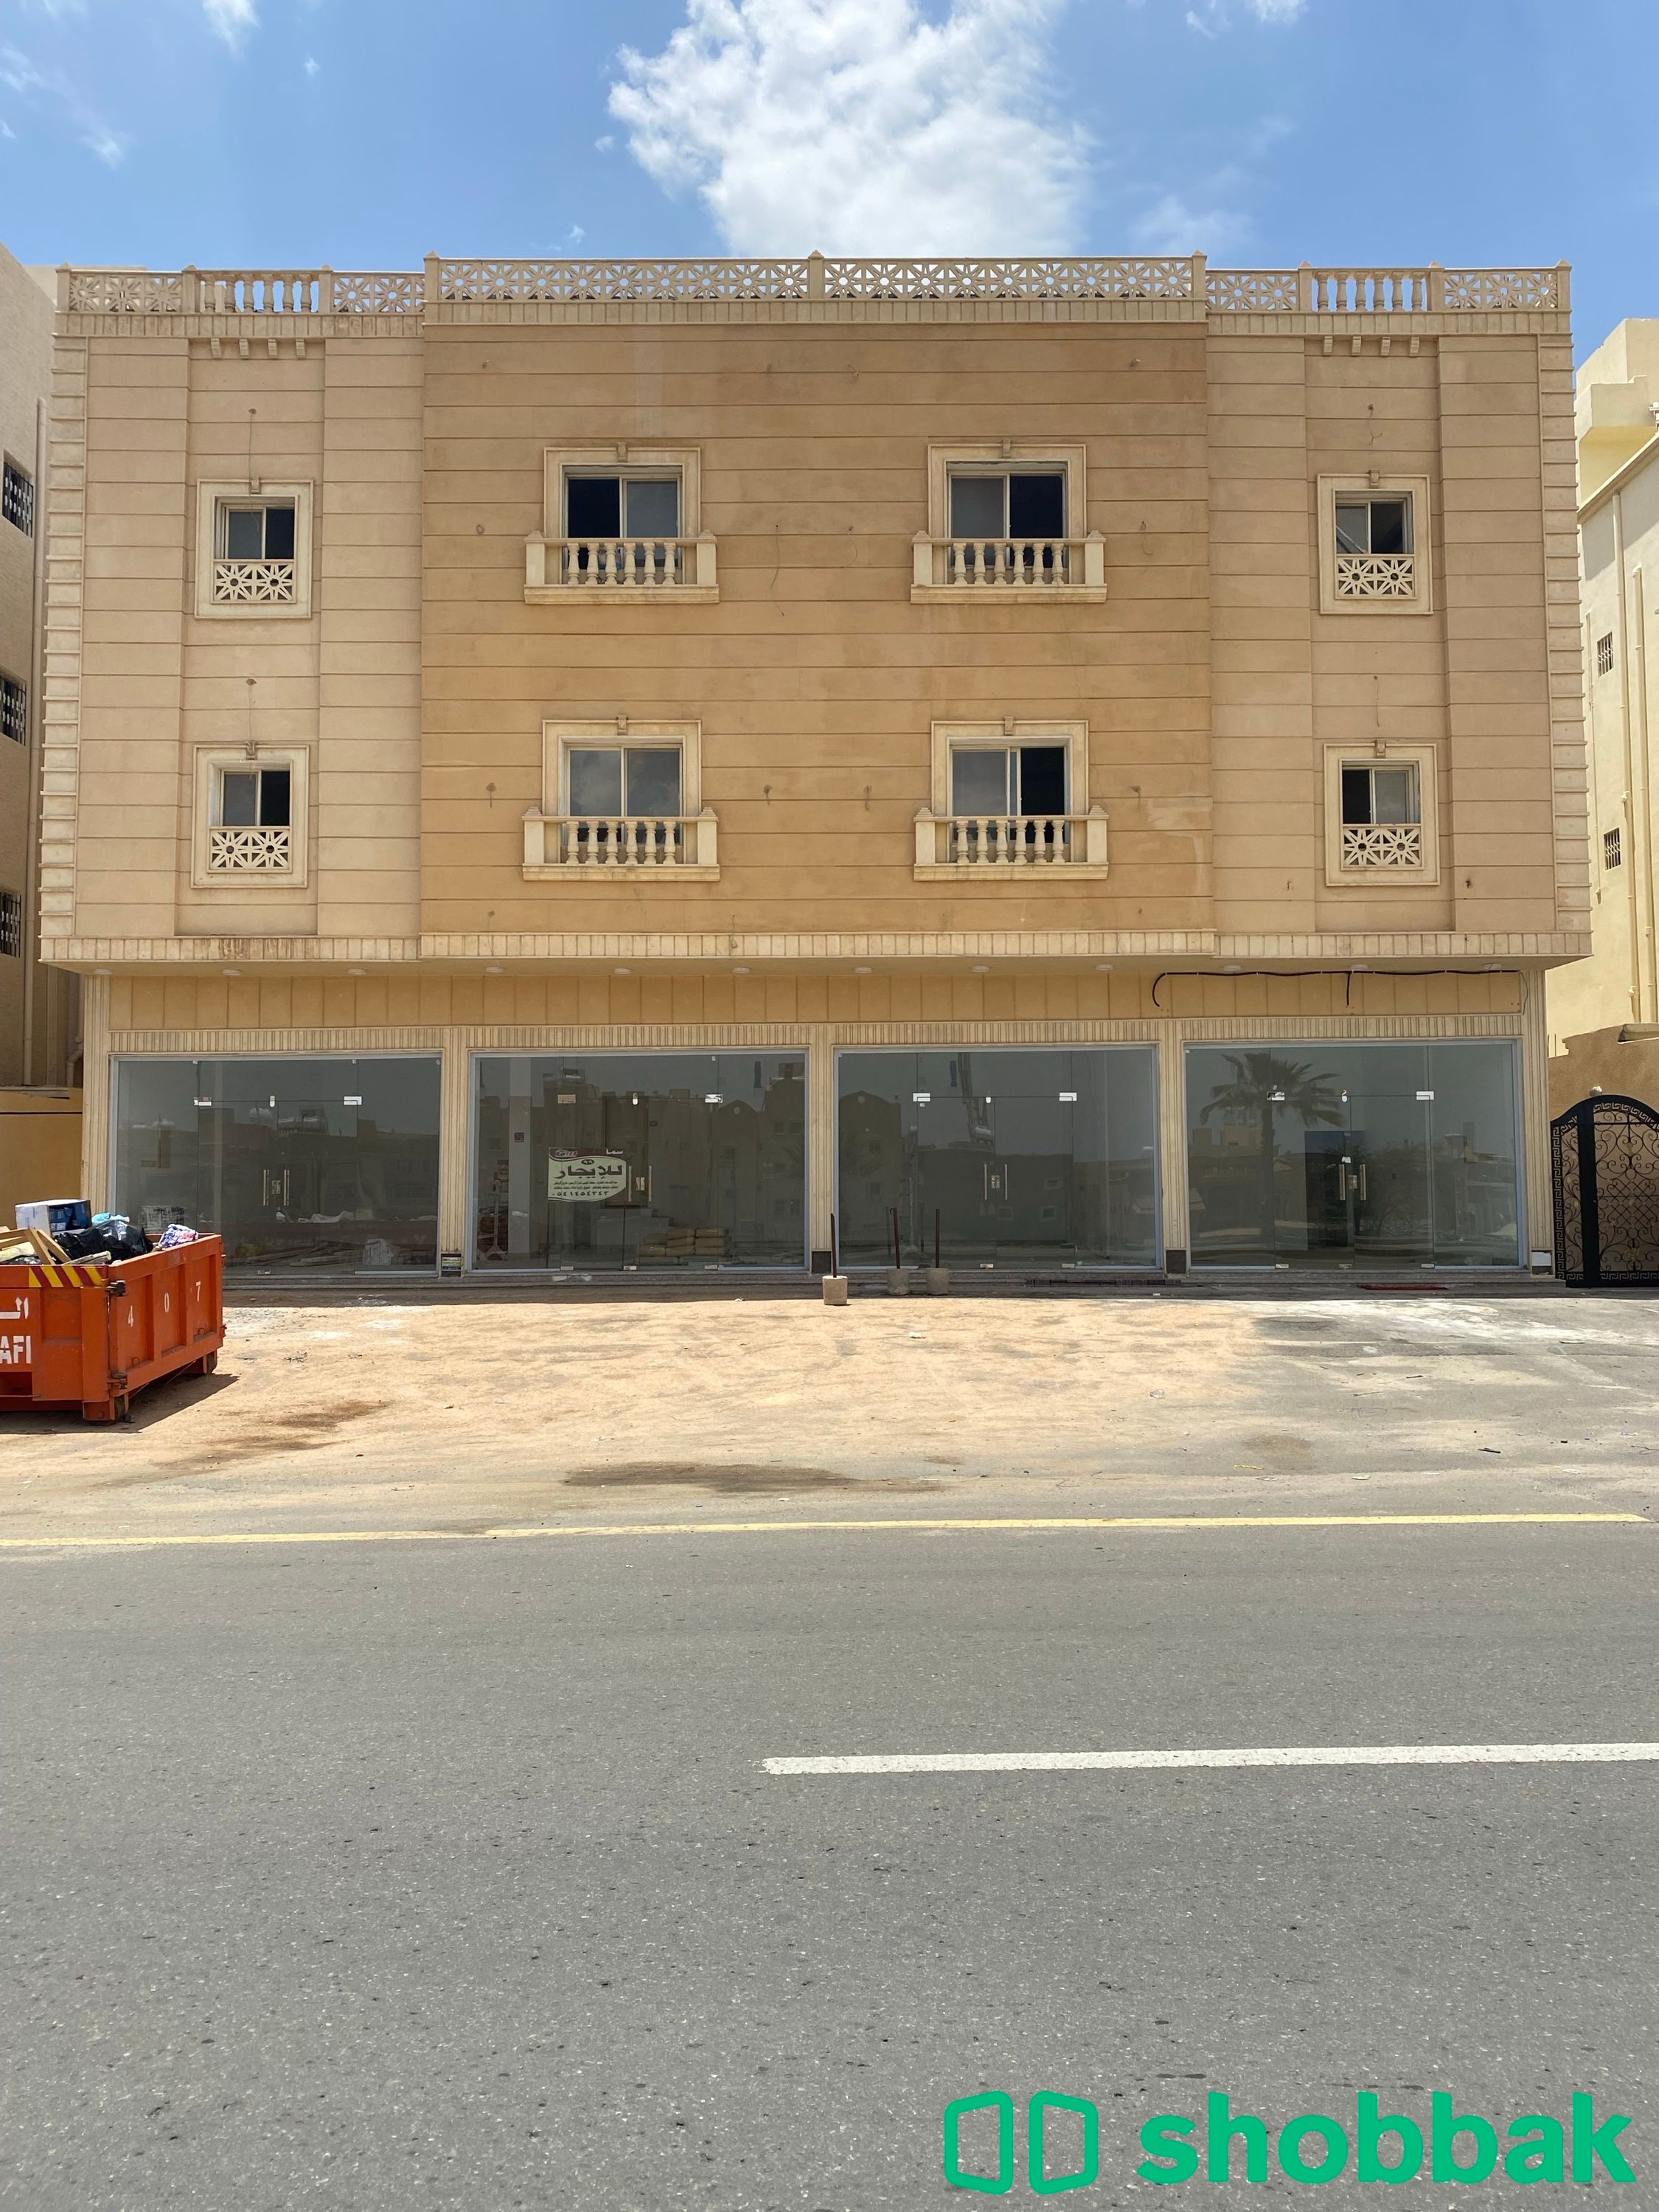 محل للإيجار رقم1 حي الموسى  Shobbak Saudi Arabia